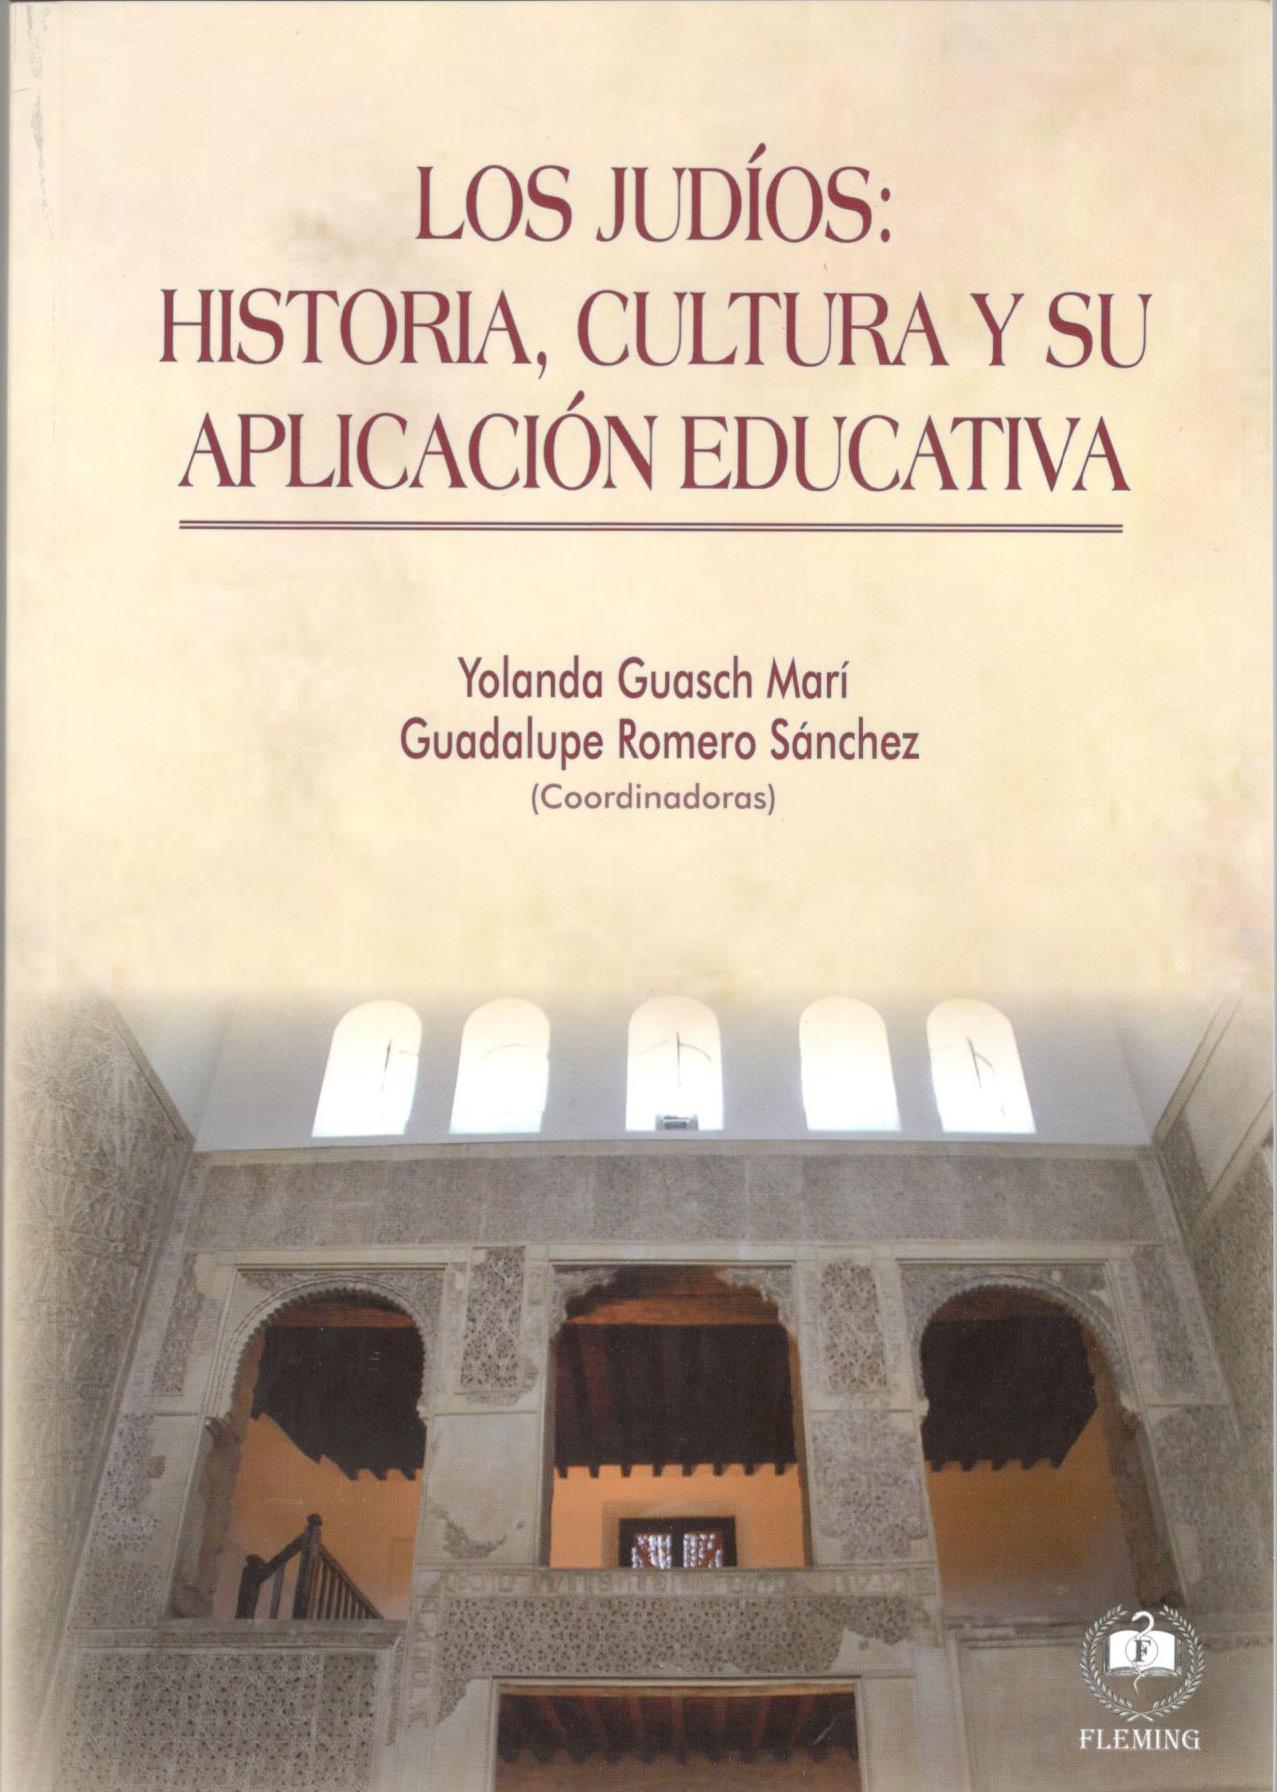 LOS JUDIOS: historia, cultura y su aplicacion educativa.